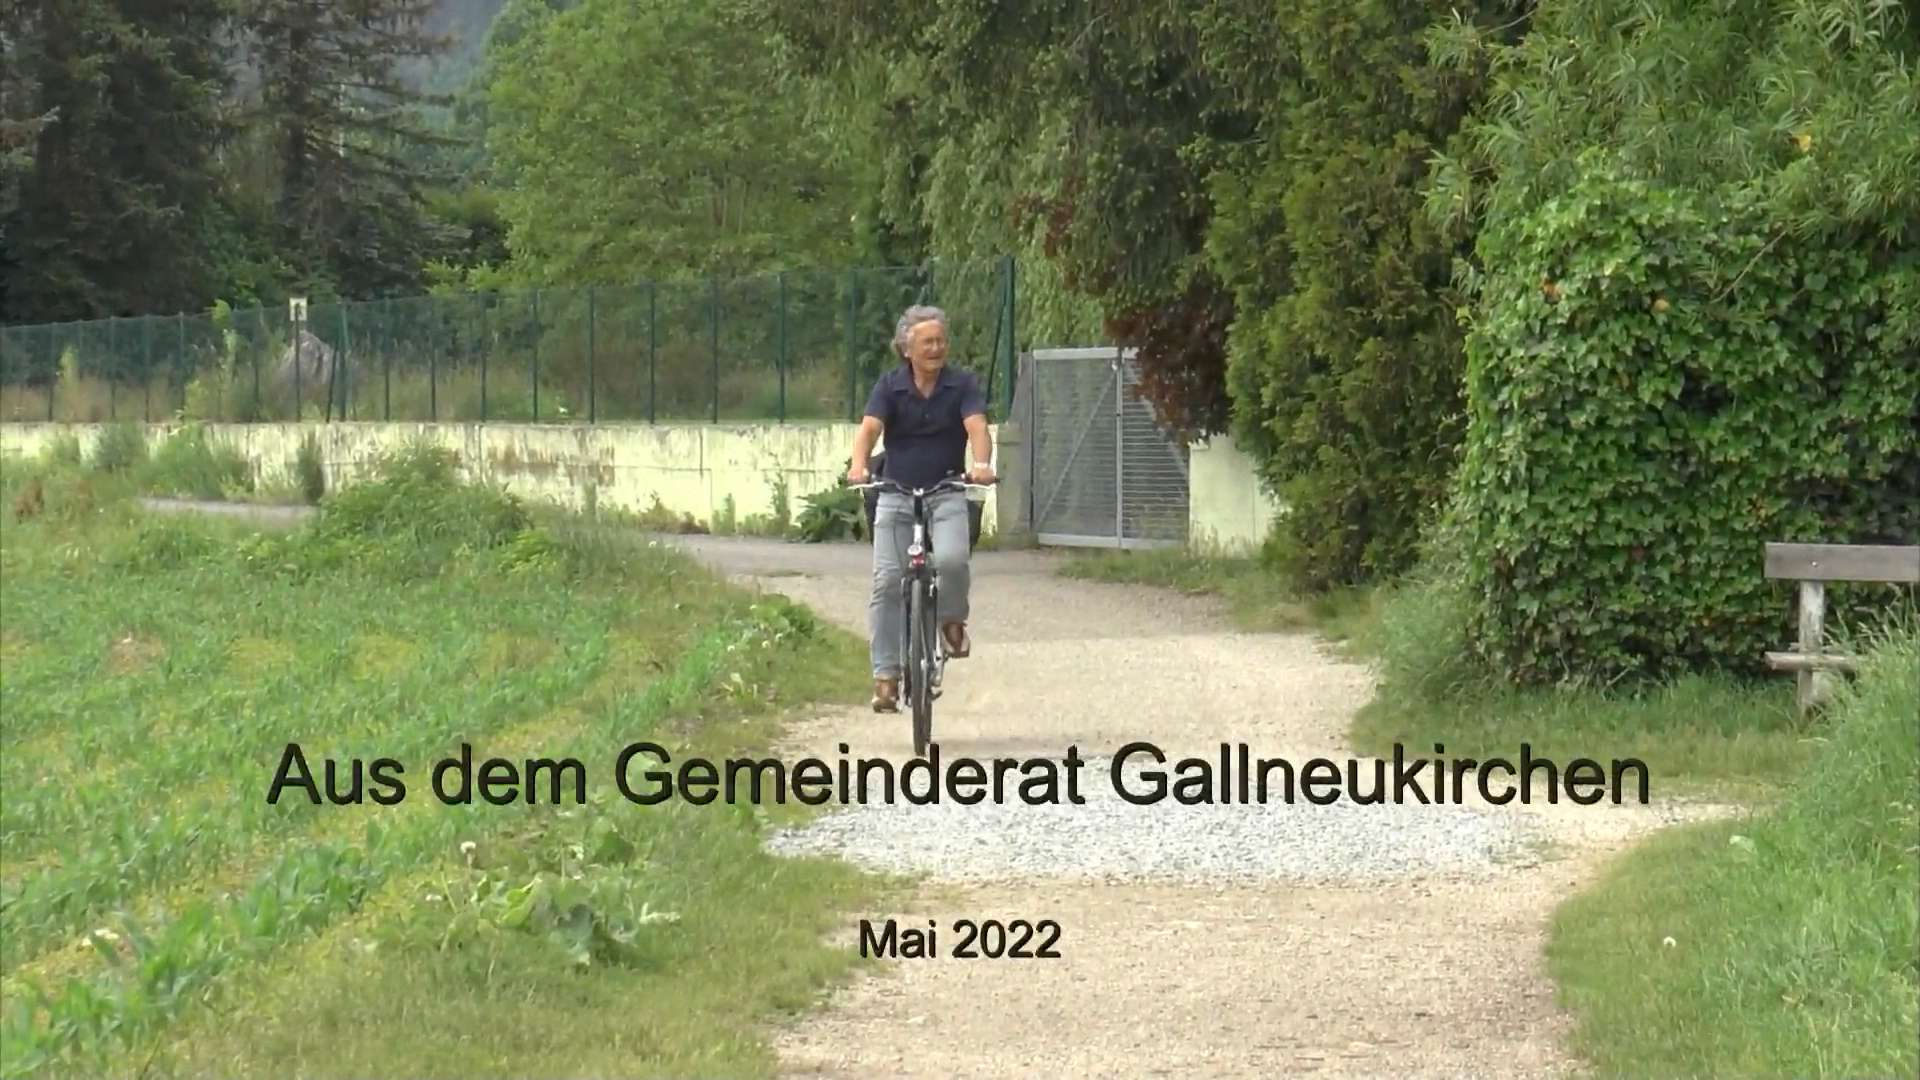 Aus dem Gemeinderat Gallneukirchen Mai 2022